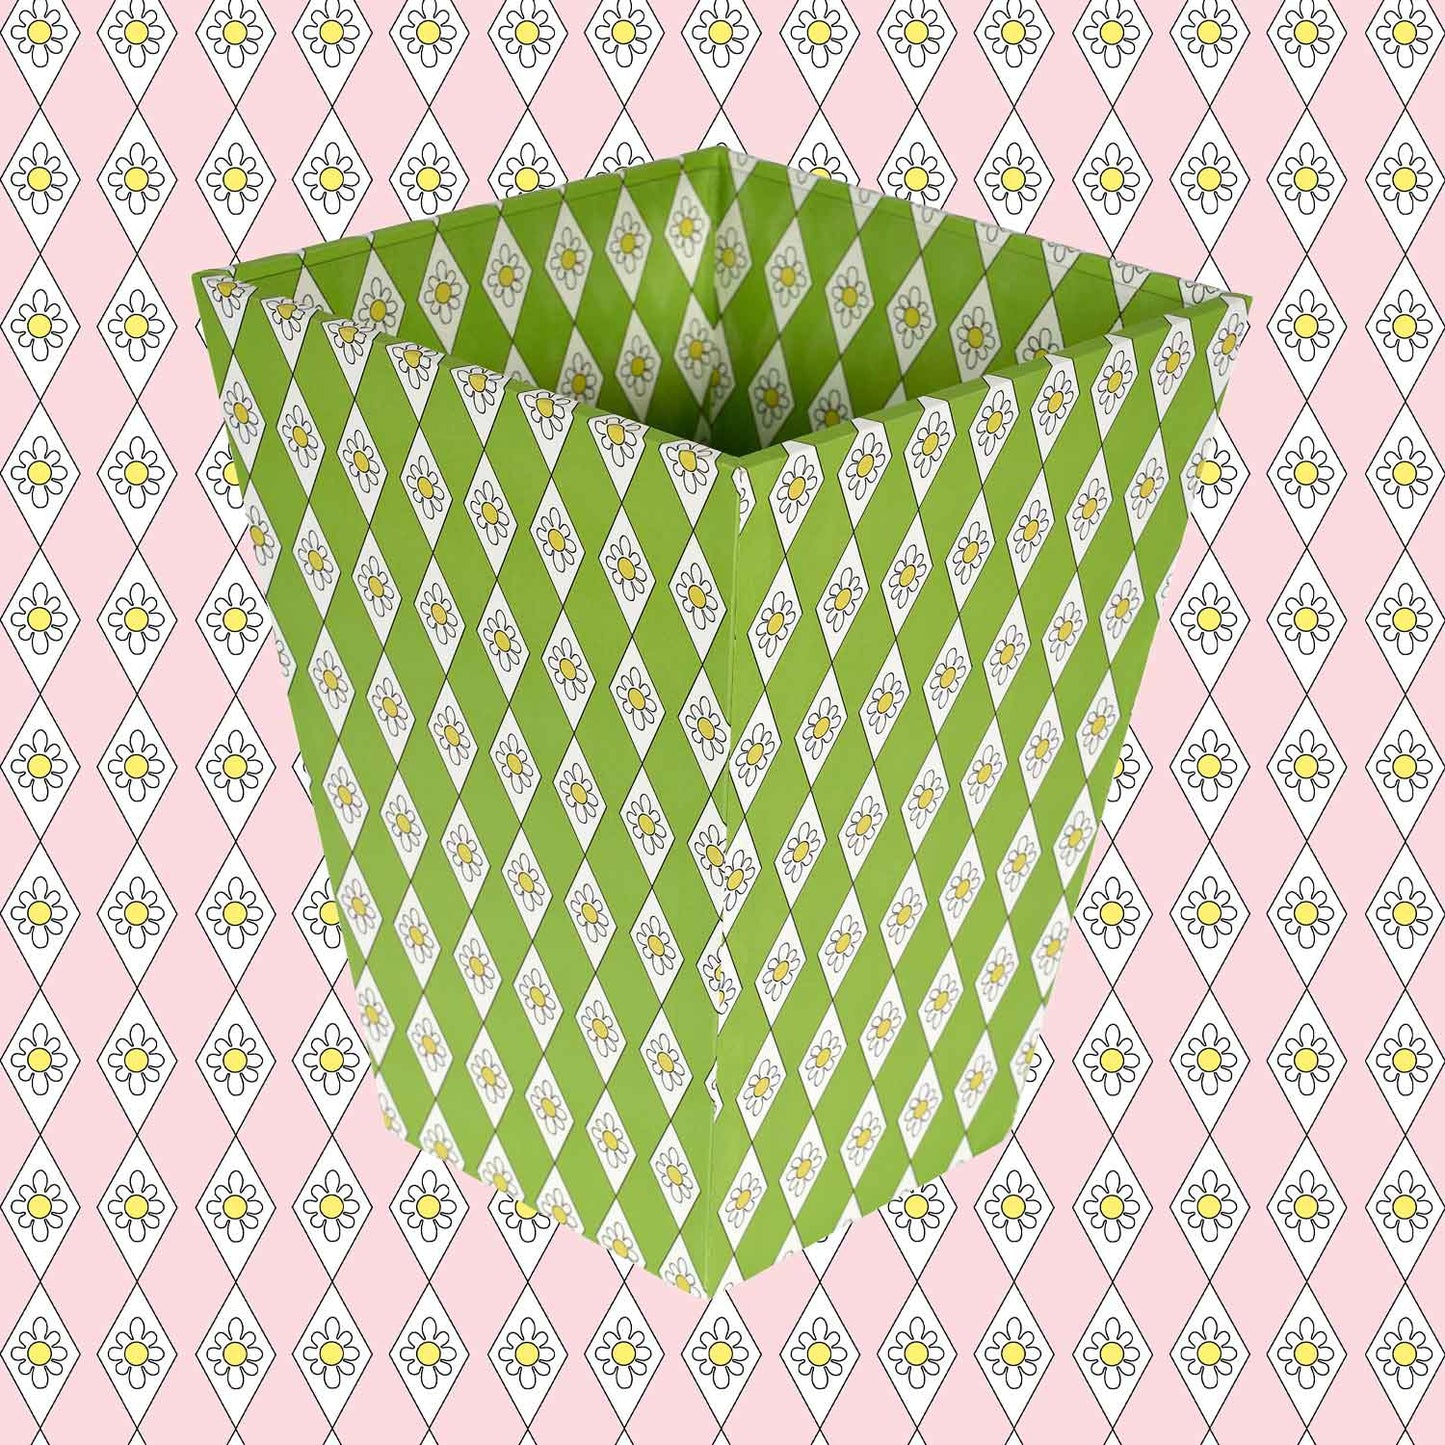 Waste Paper Bin - Green Diamond Daisy